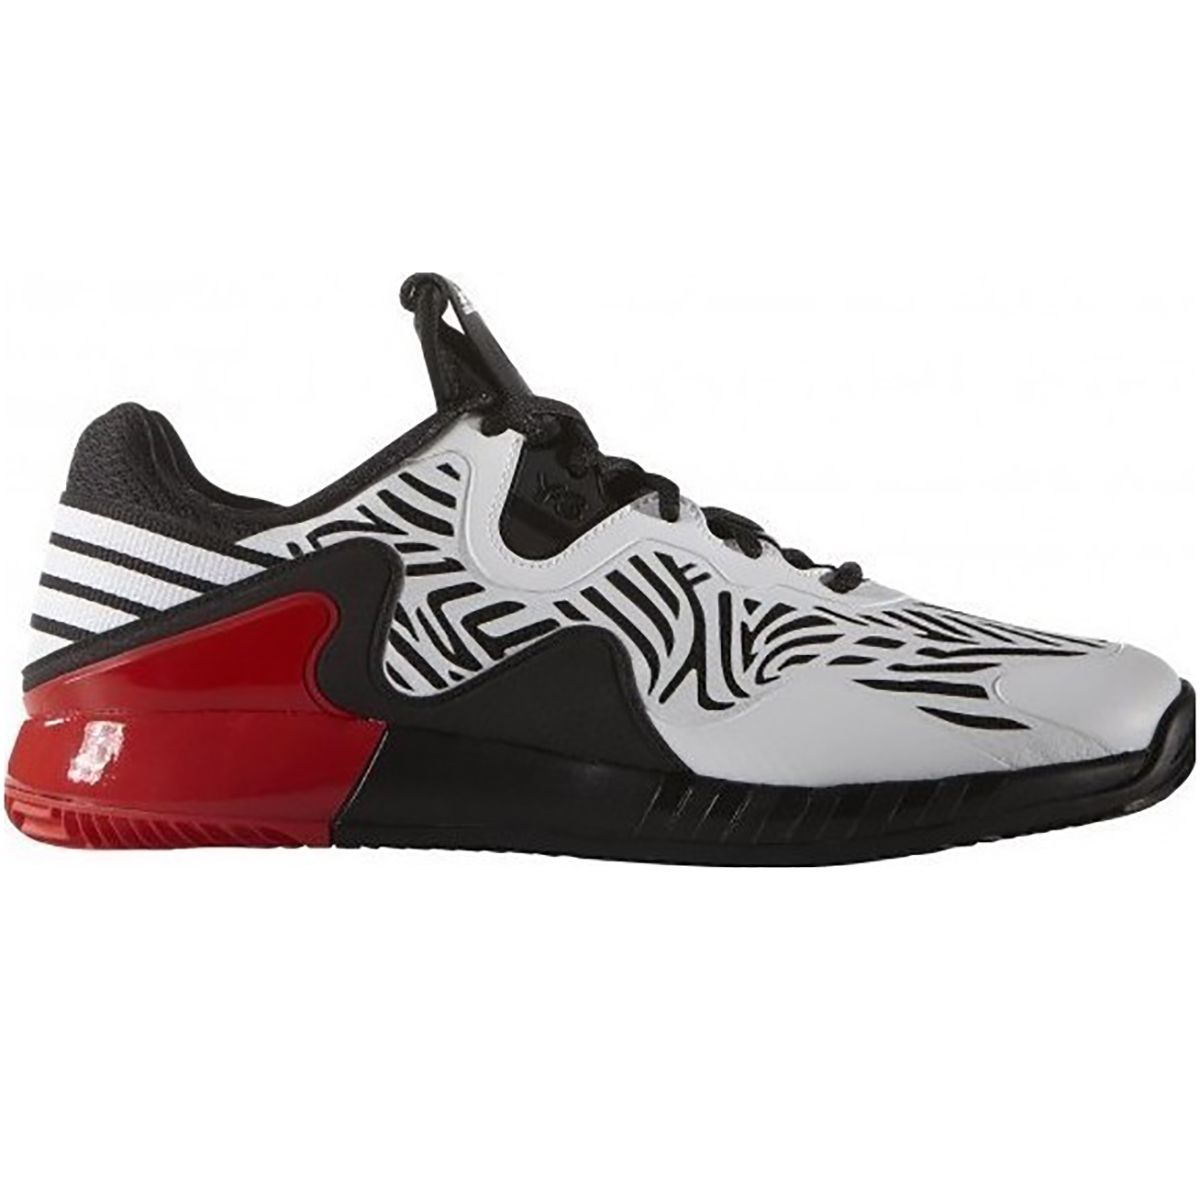 Adidas Adizero Y3 Mens Tennis Shoes S78389